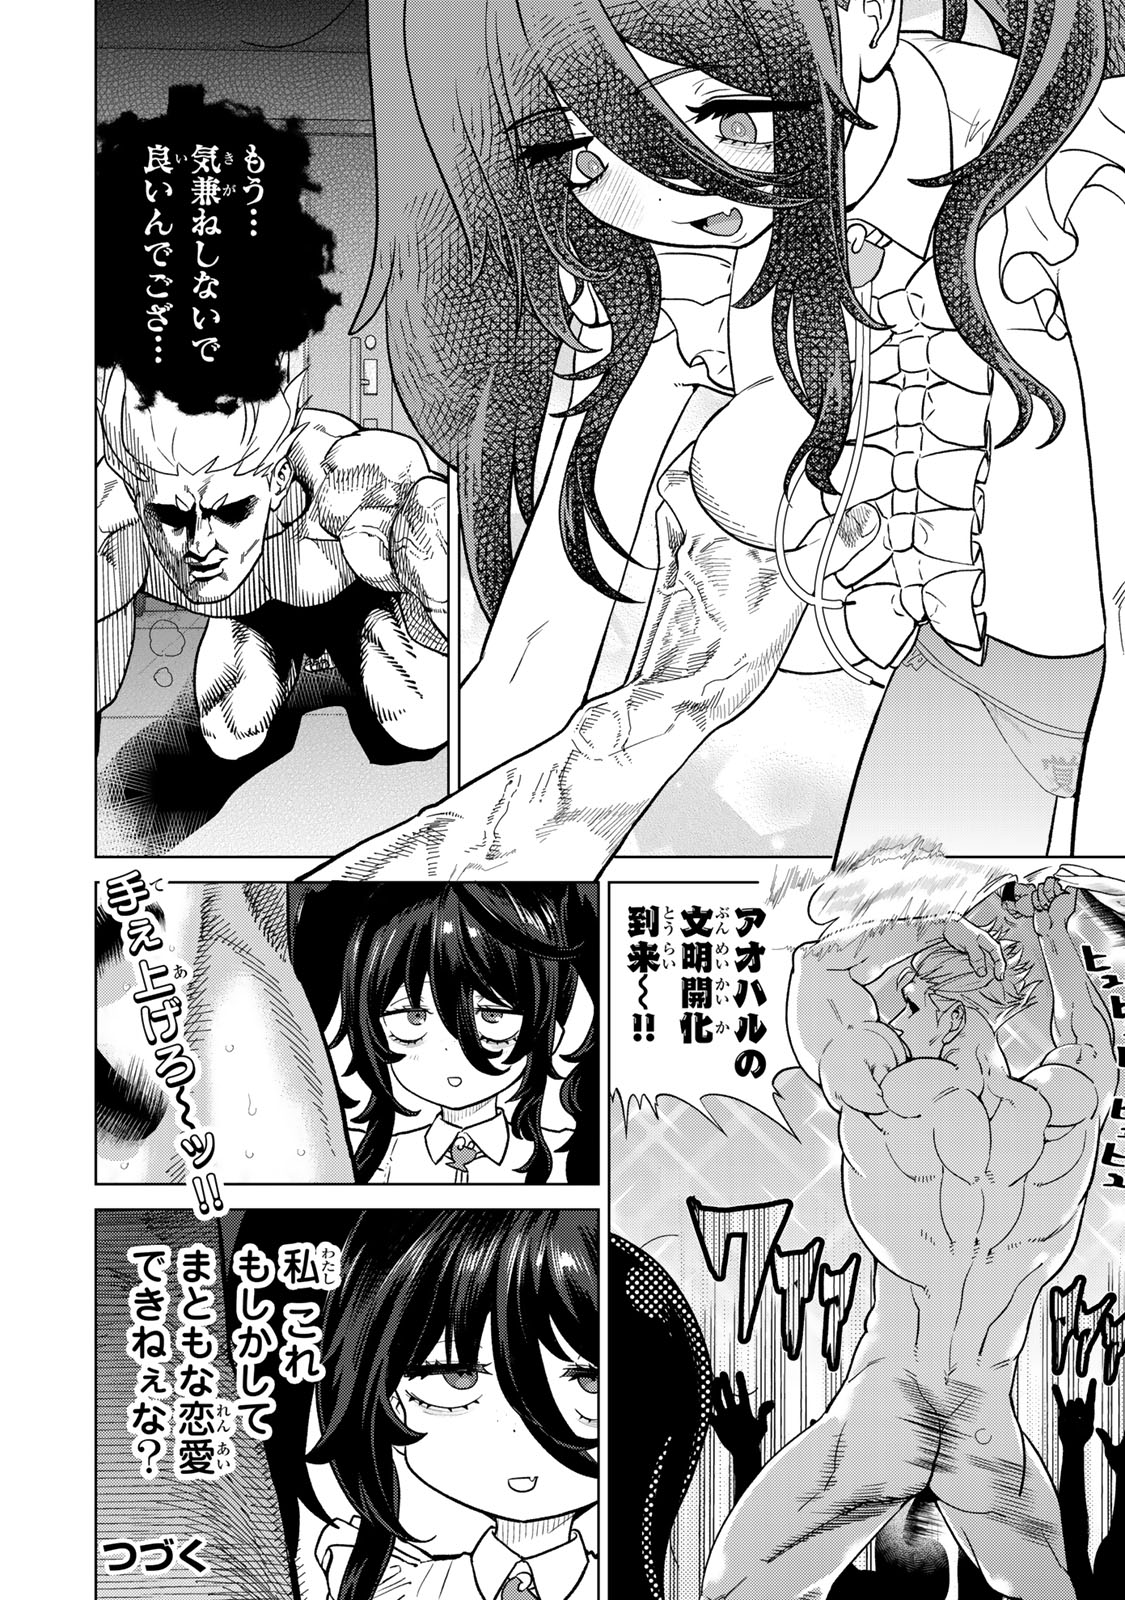 Yappa Ningen Yamete Seikai da wa - Chapter 3 - Page 24